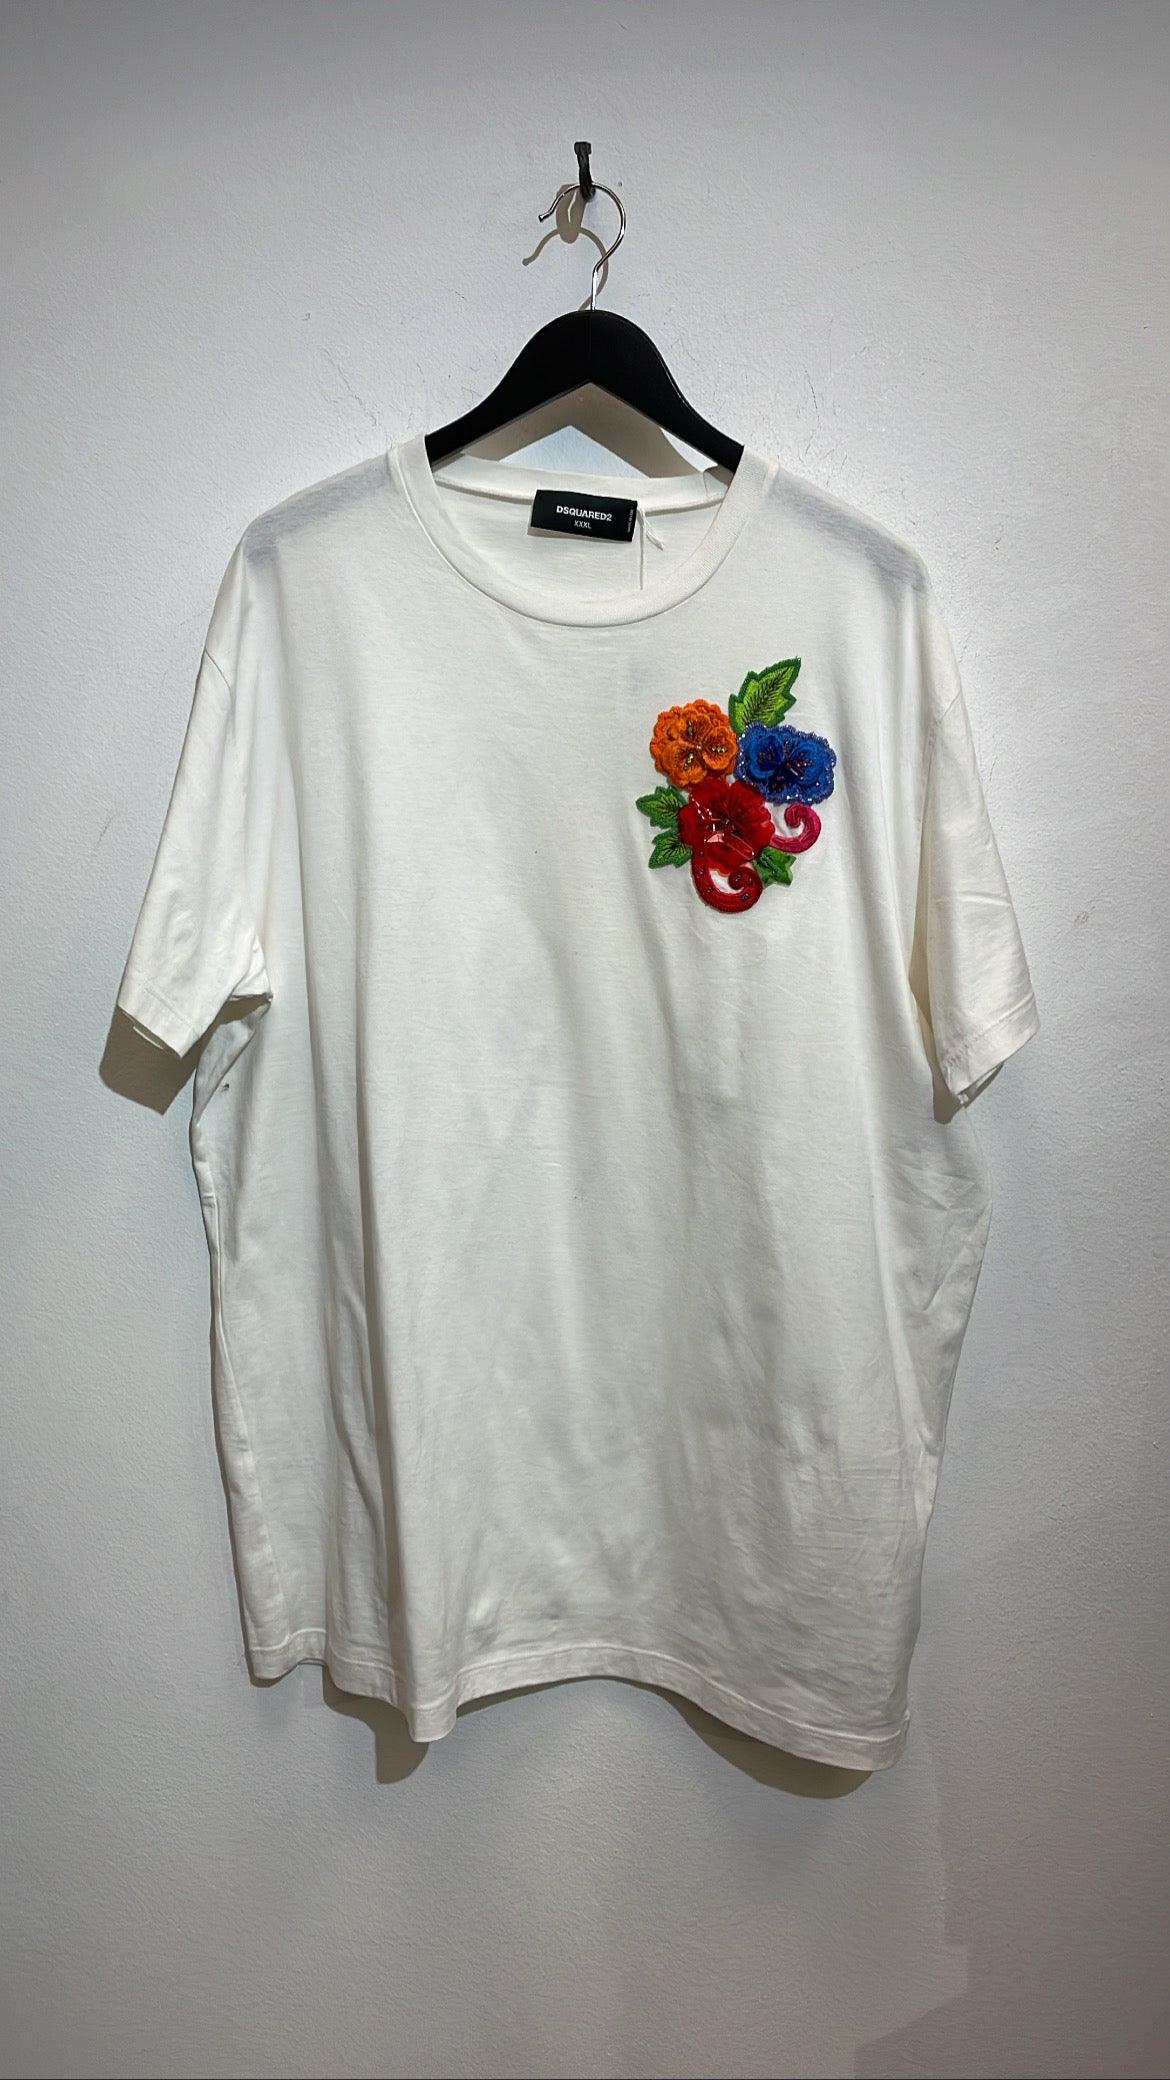 T-shirt - DSQUARED2 - Abiti Vintage & Sales